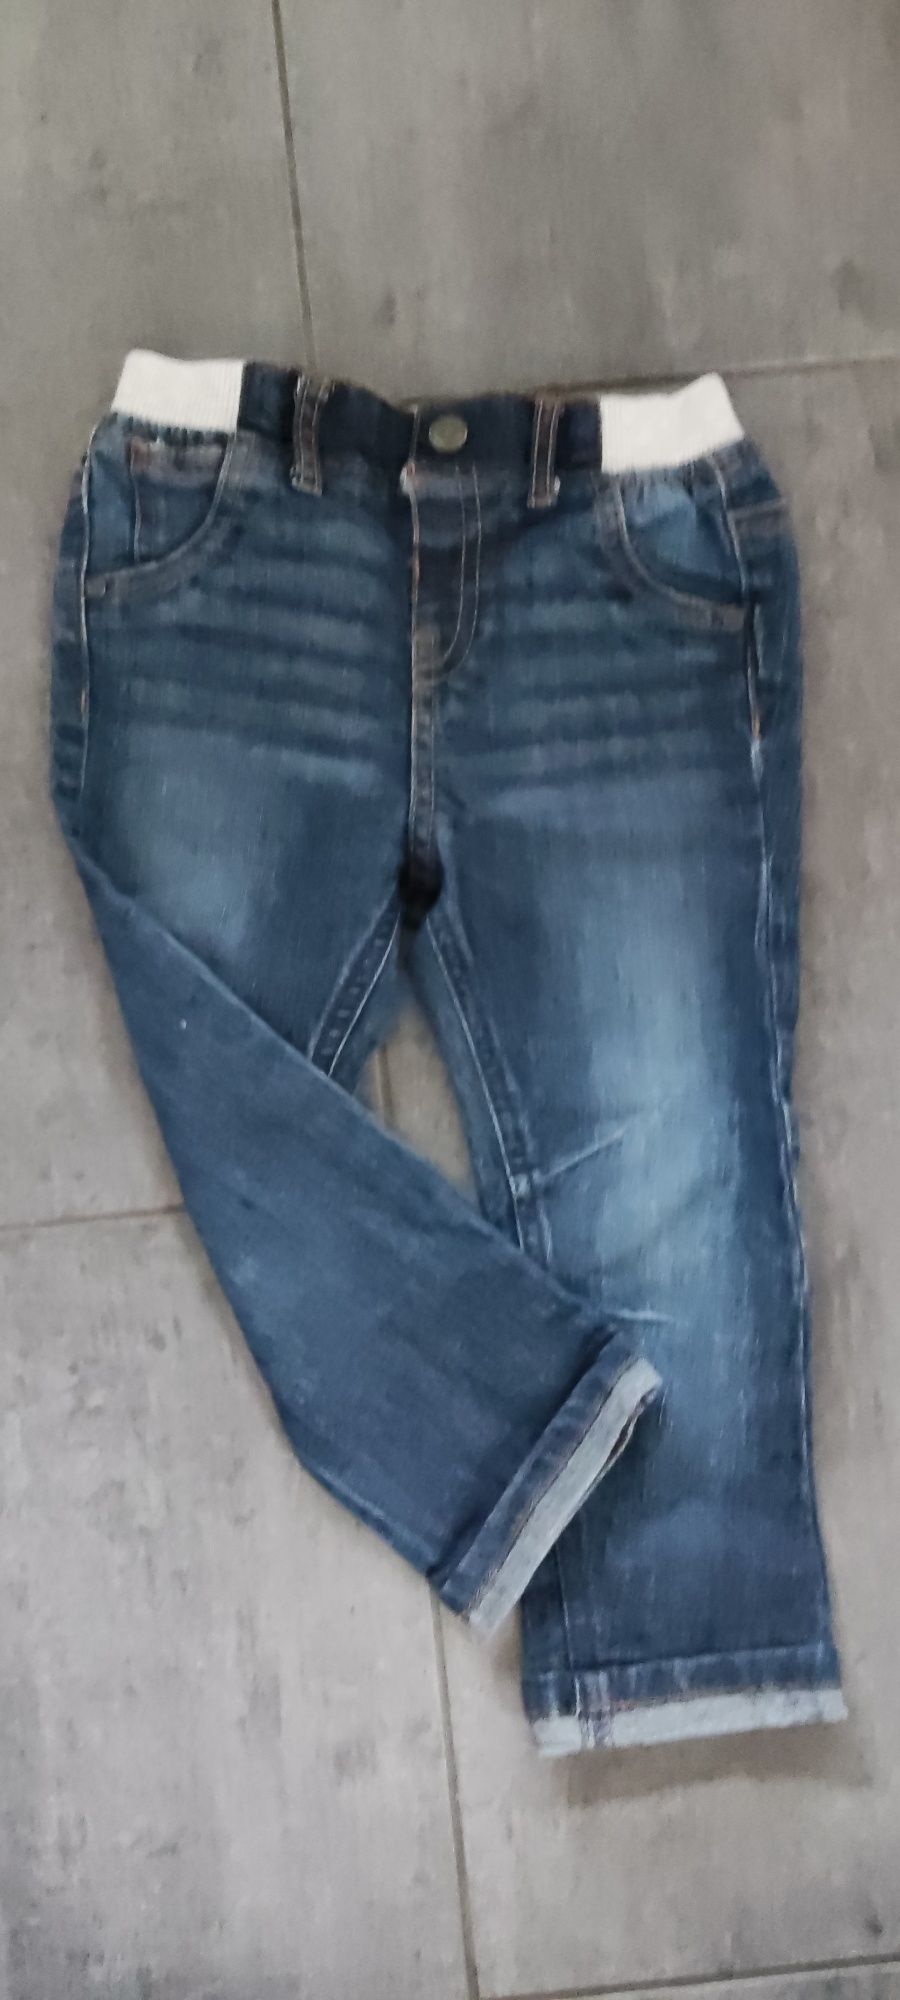 Spodnie jeansy F&F, rozmiar 92 (18-24 miesięcy).